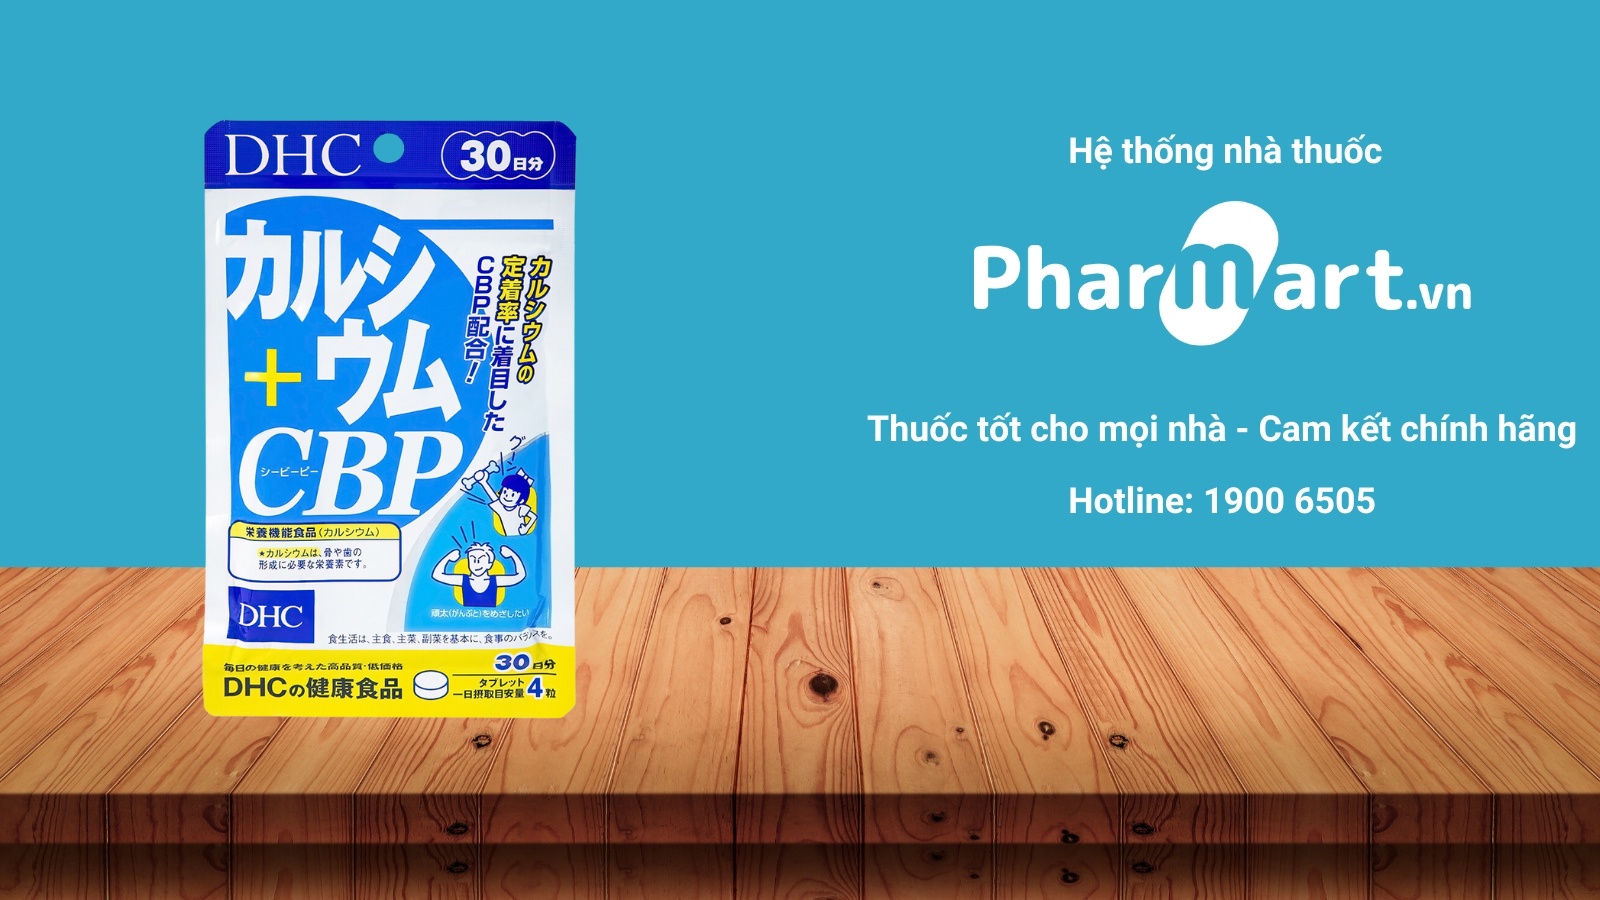 Mua ngay viên uống DHC Calcium + CBP chính hãng tại Pharmart.vn.